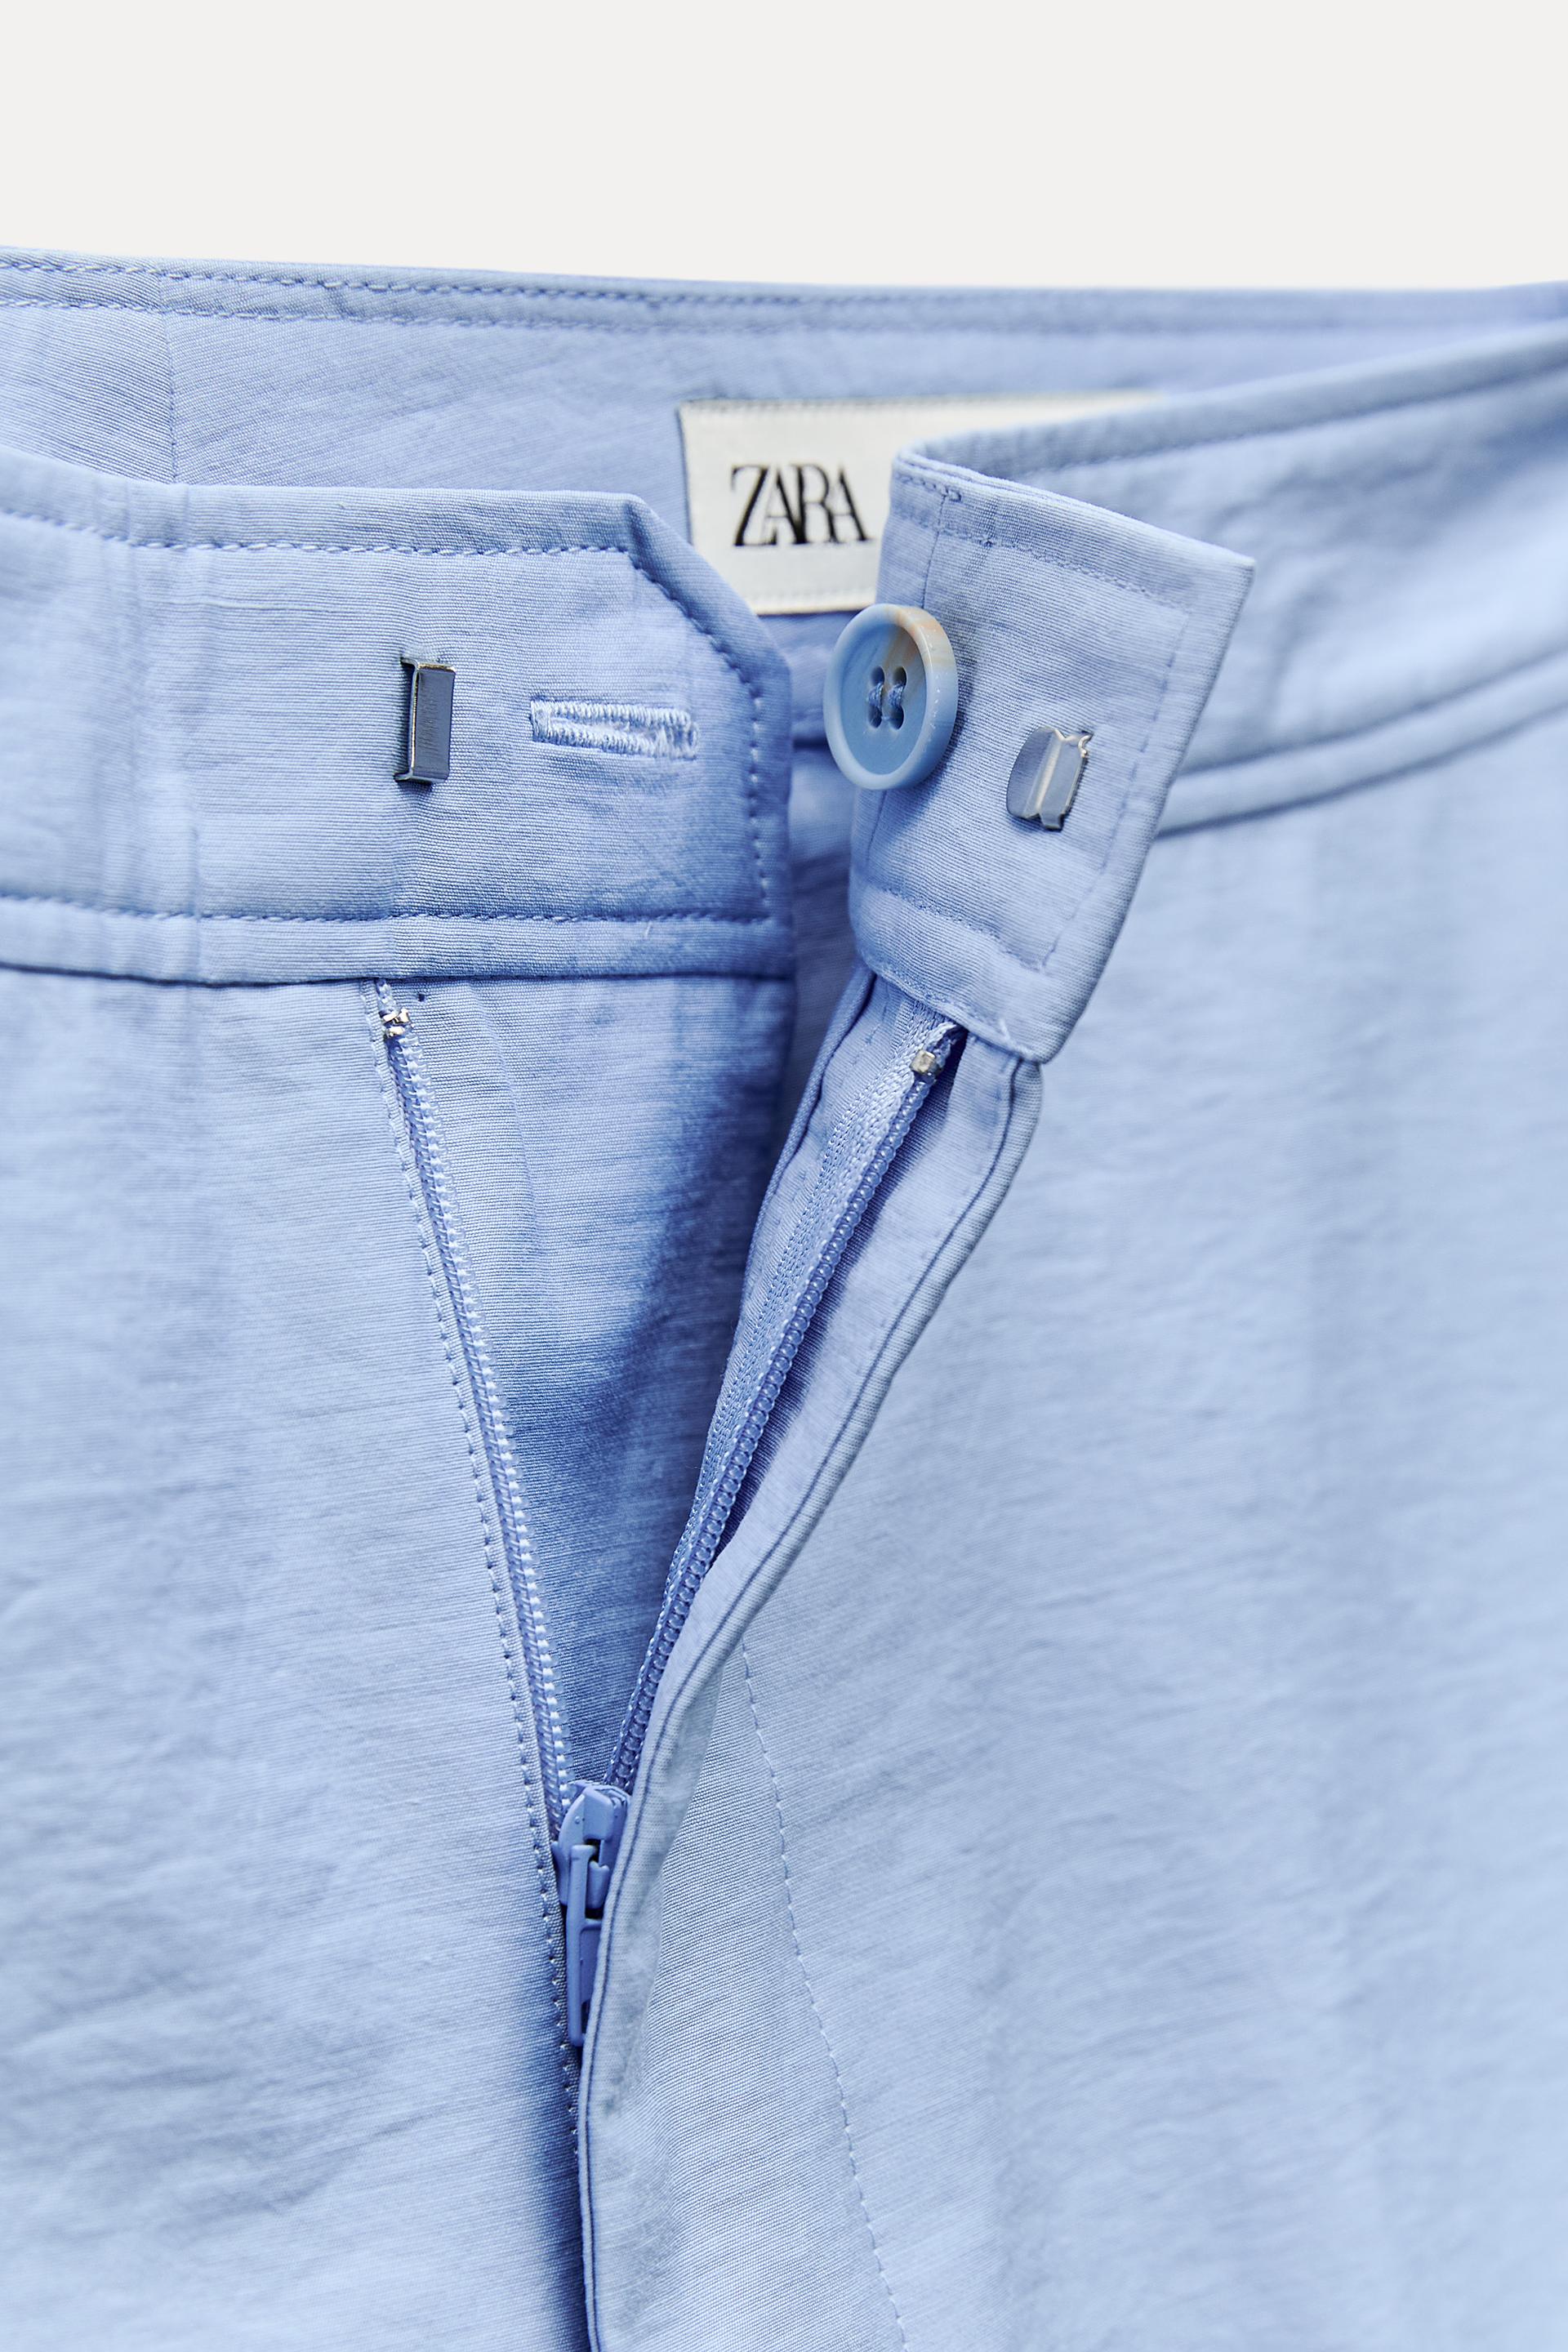 Part 1: ZARA SALE HAUL. Korset refcode: 6147/091 Jeans refcode